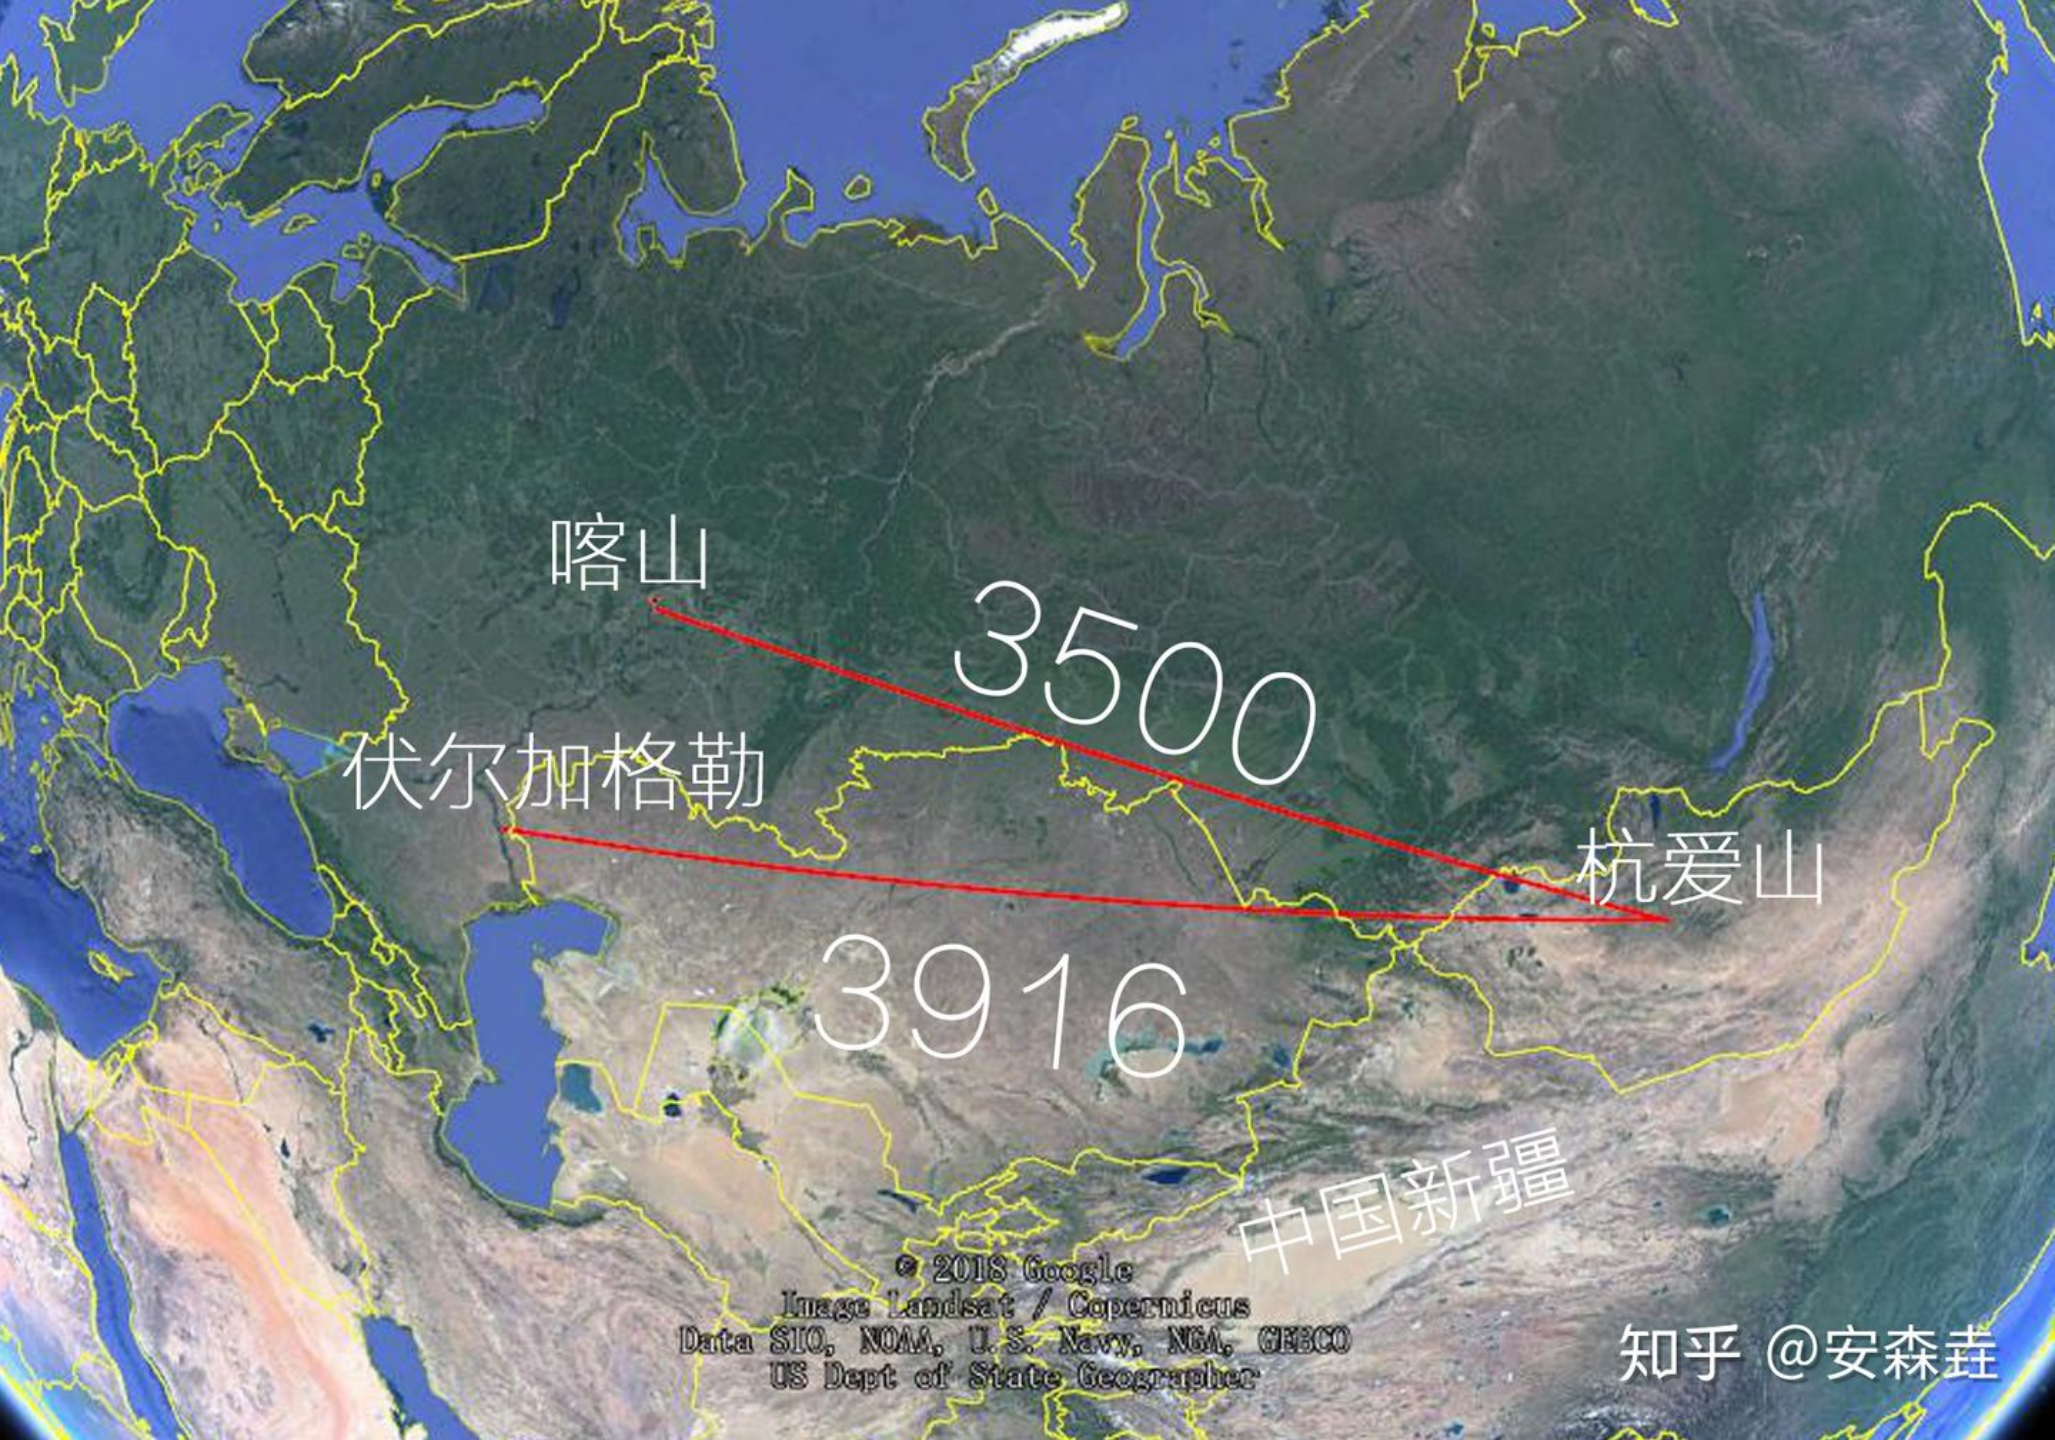 图 7：蒙古国杭爱山到俄罗斯喀山、伏尔加格勒的距离